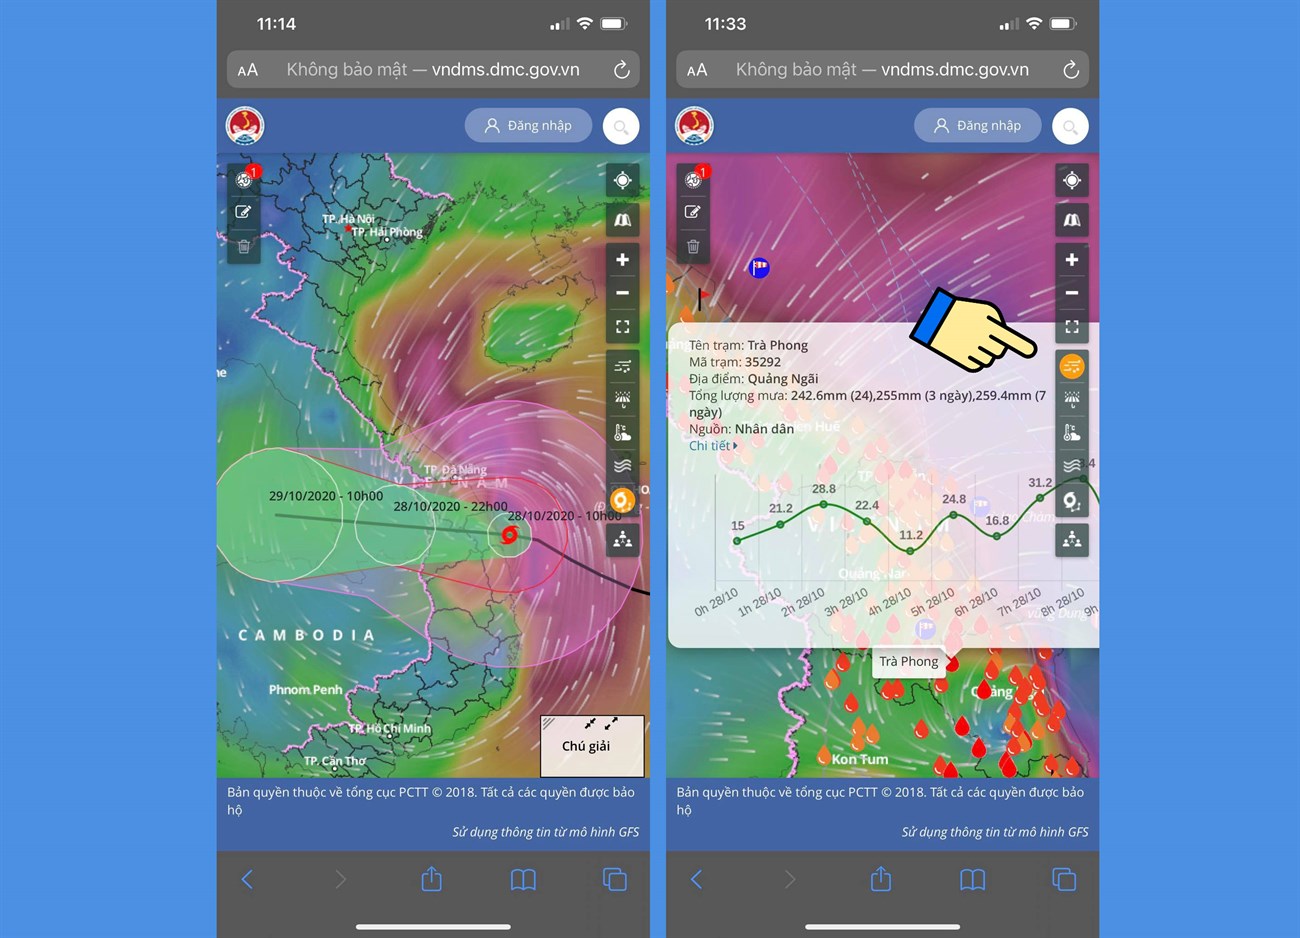 Cách xem bản đồ dự báo thời tiết như thế nào có lẽ đã trở nên quen thuộc với hầu hết mọi người. Tuy nhiên, với những cải tiến mới, bạn có thể dễ dàng tìm thấy thông tin bạn cần và quản lý thông tin thời tiết của mình để chuẩn bị cho bất kỳ trường hợp bất ngờ nào.